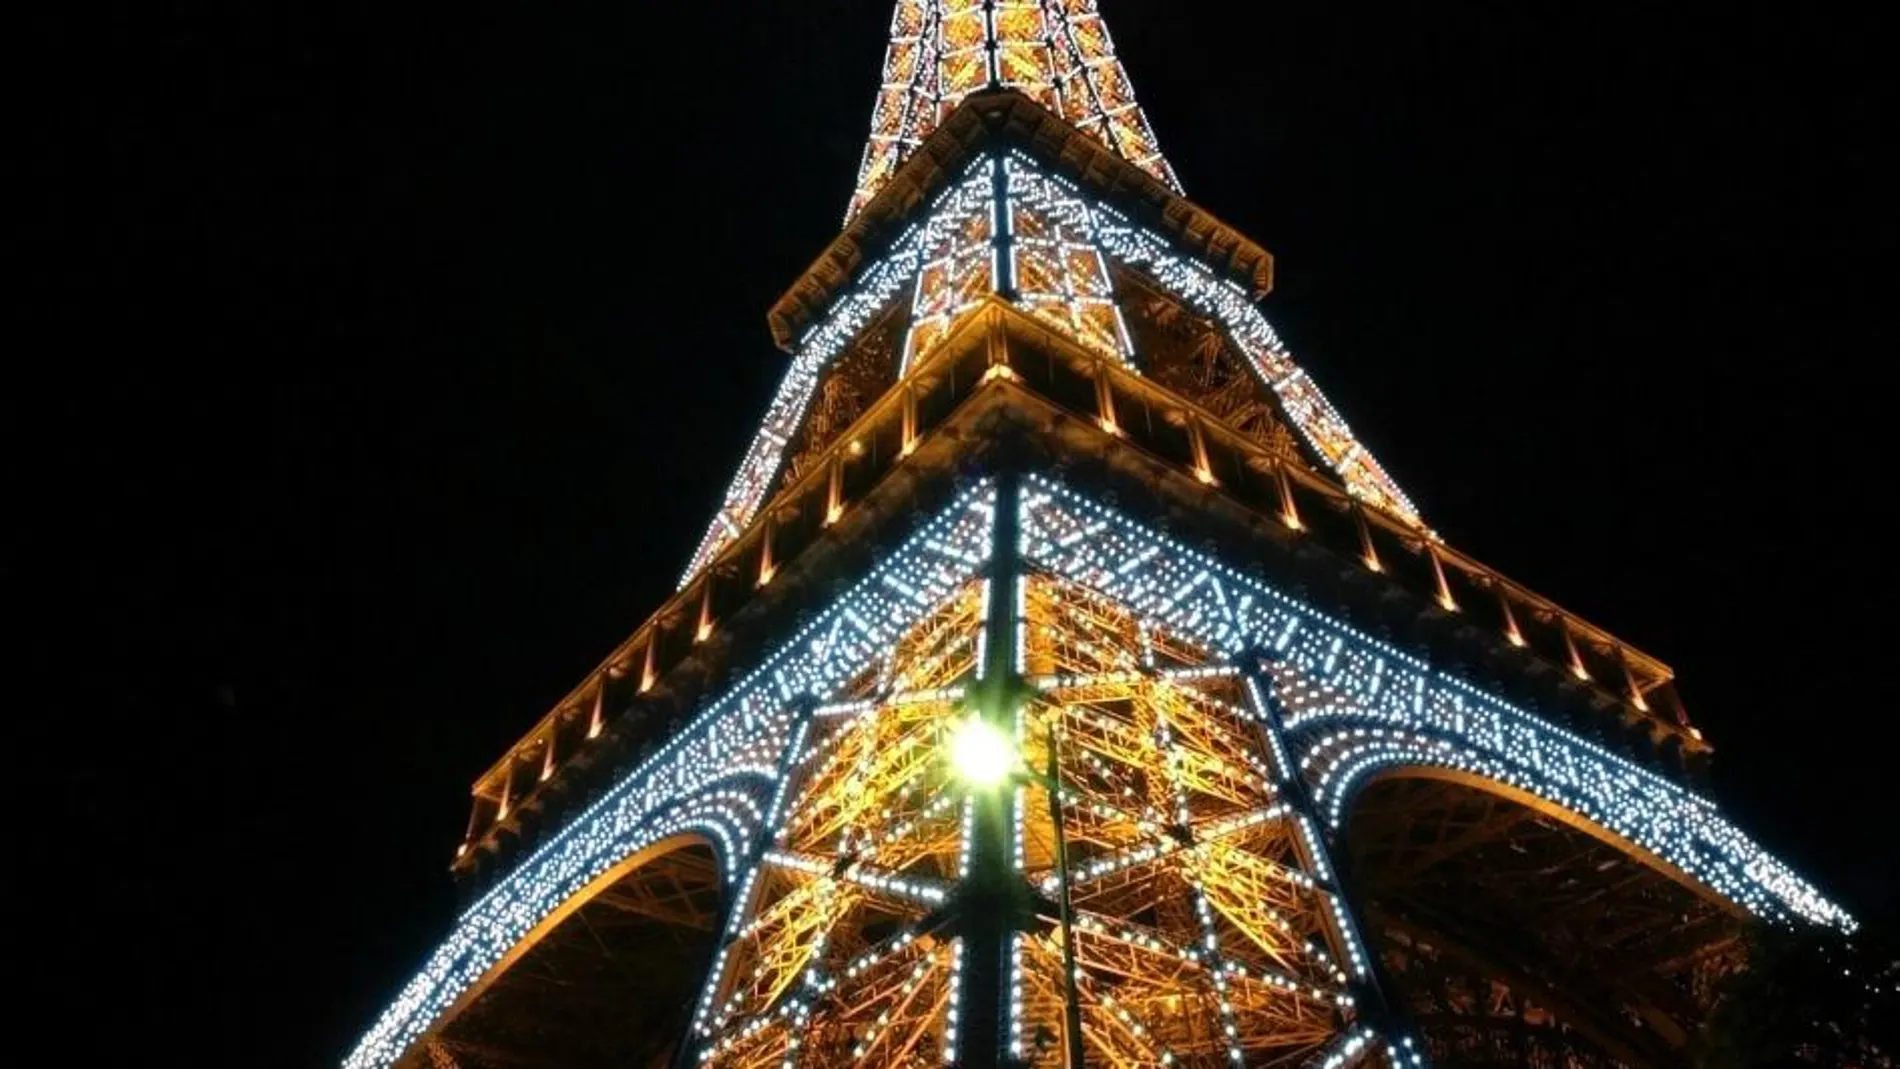 Imagen de la Torre Eiffel, símbolo de la Ciudad de la Luz